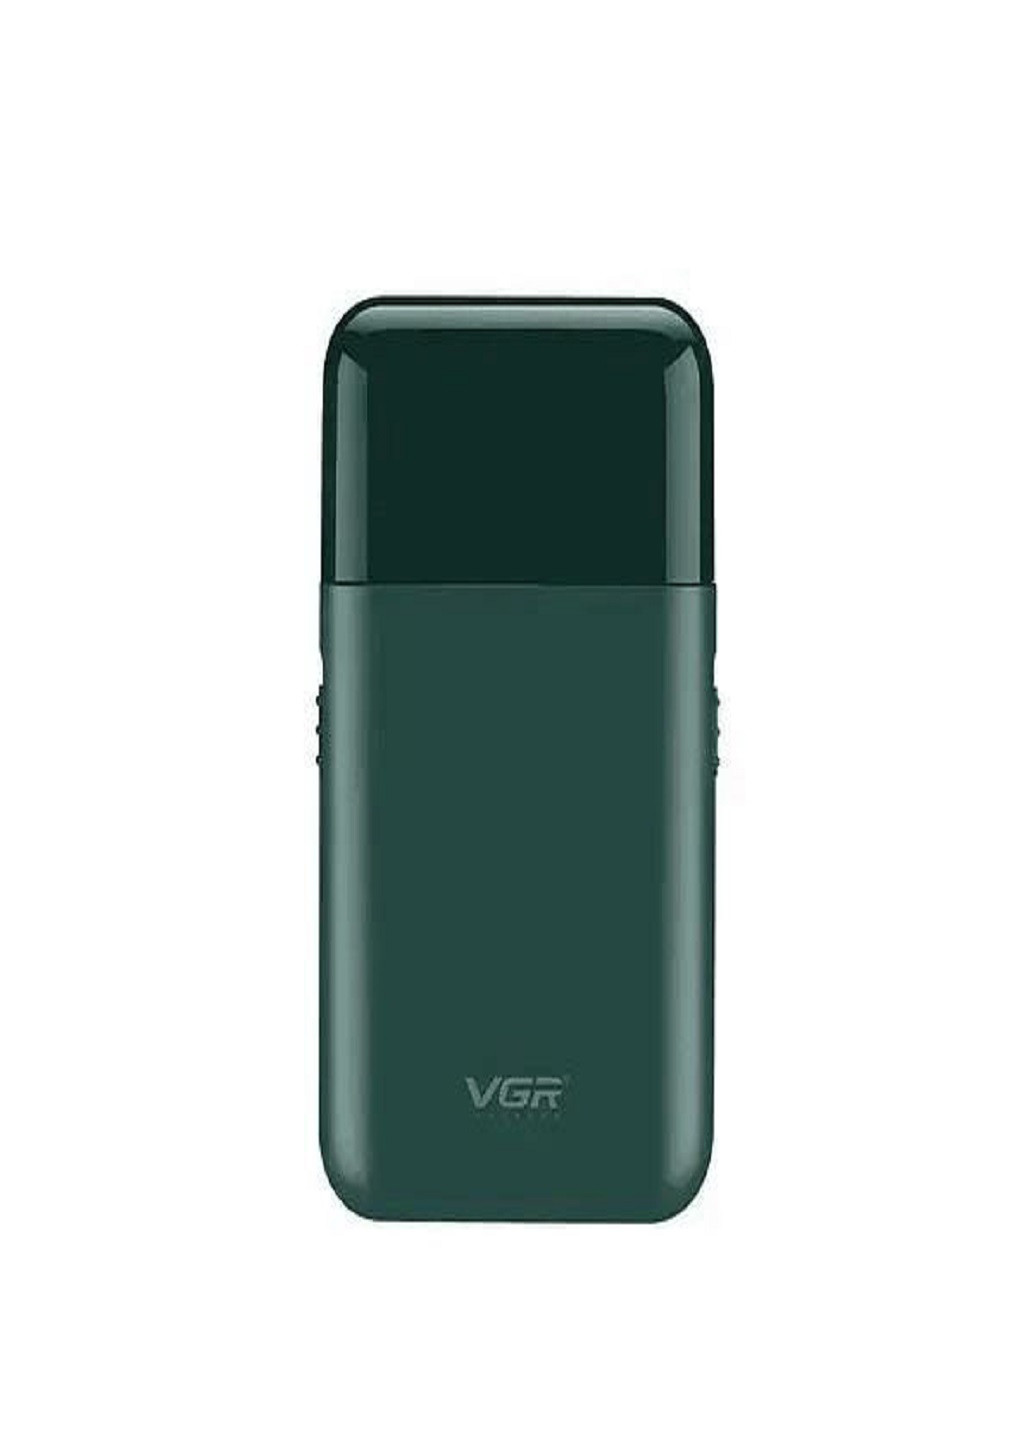 Електробритва V-390 бритва акумуляторна VGR (277979682)